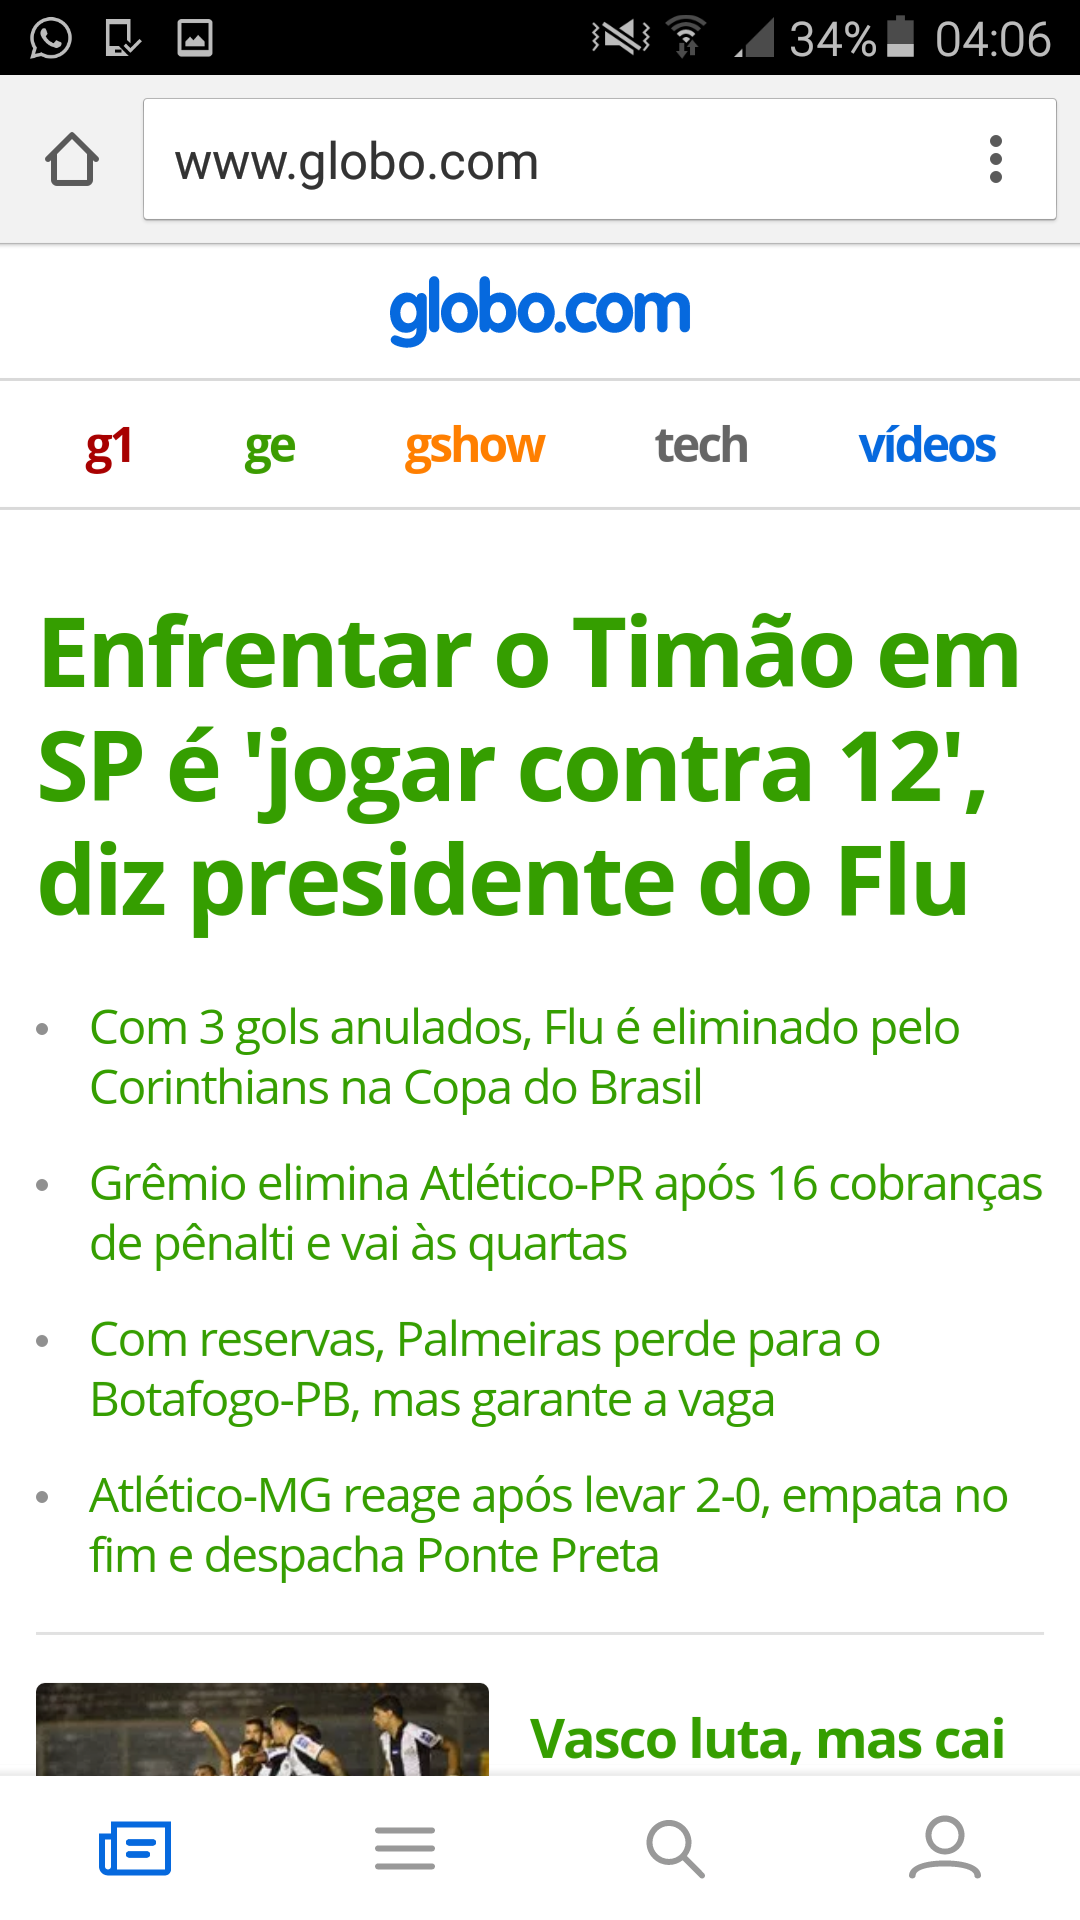 Globo manipuladora cancer do futebol